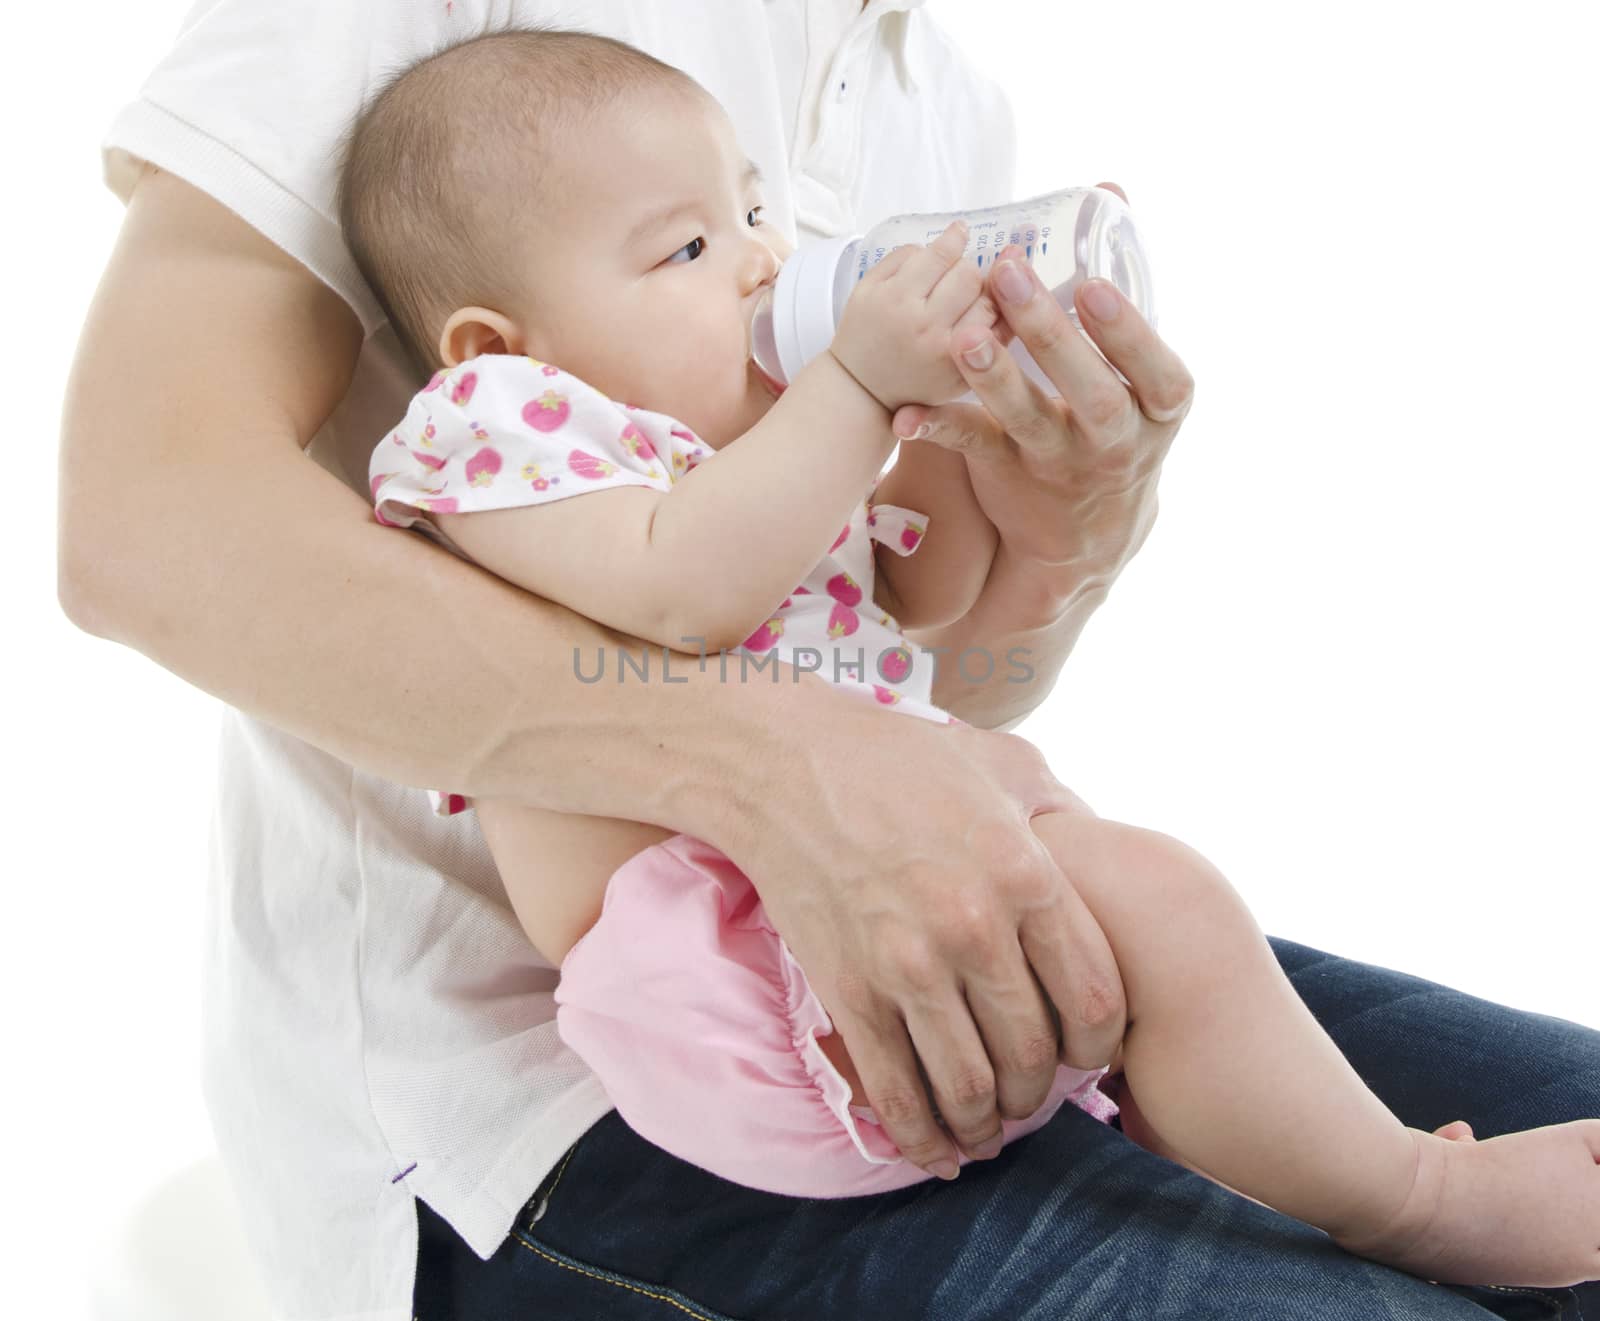 Daddy bottle feeding to baby by szefei